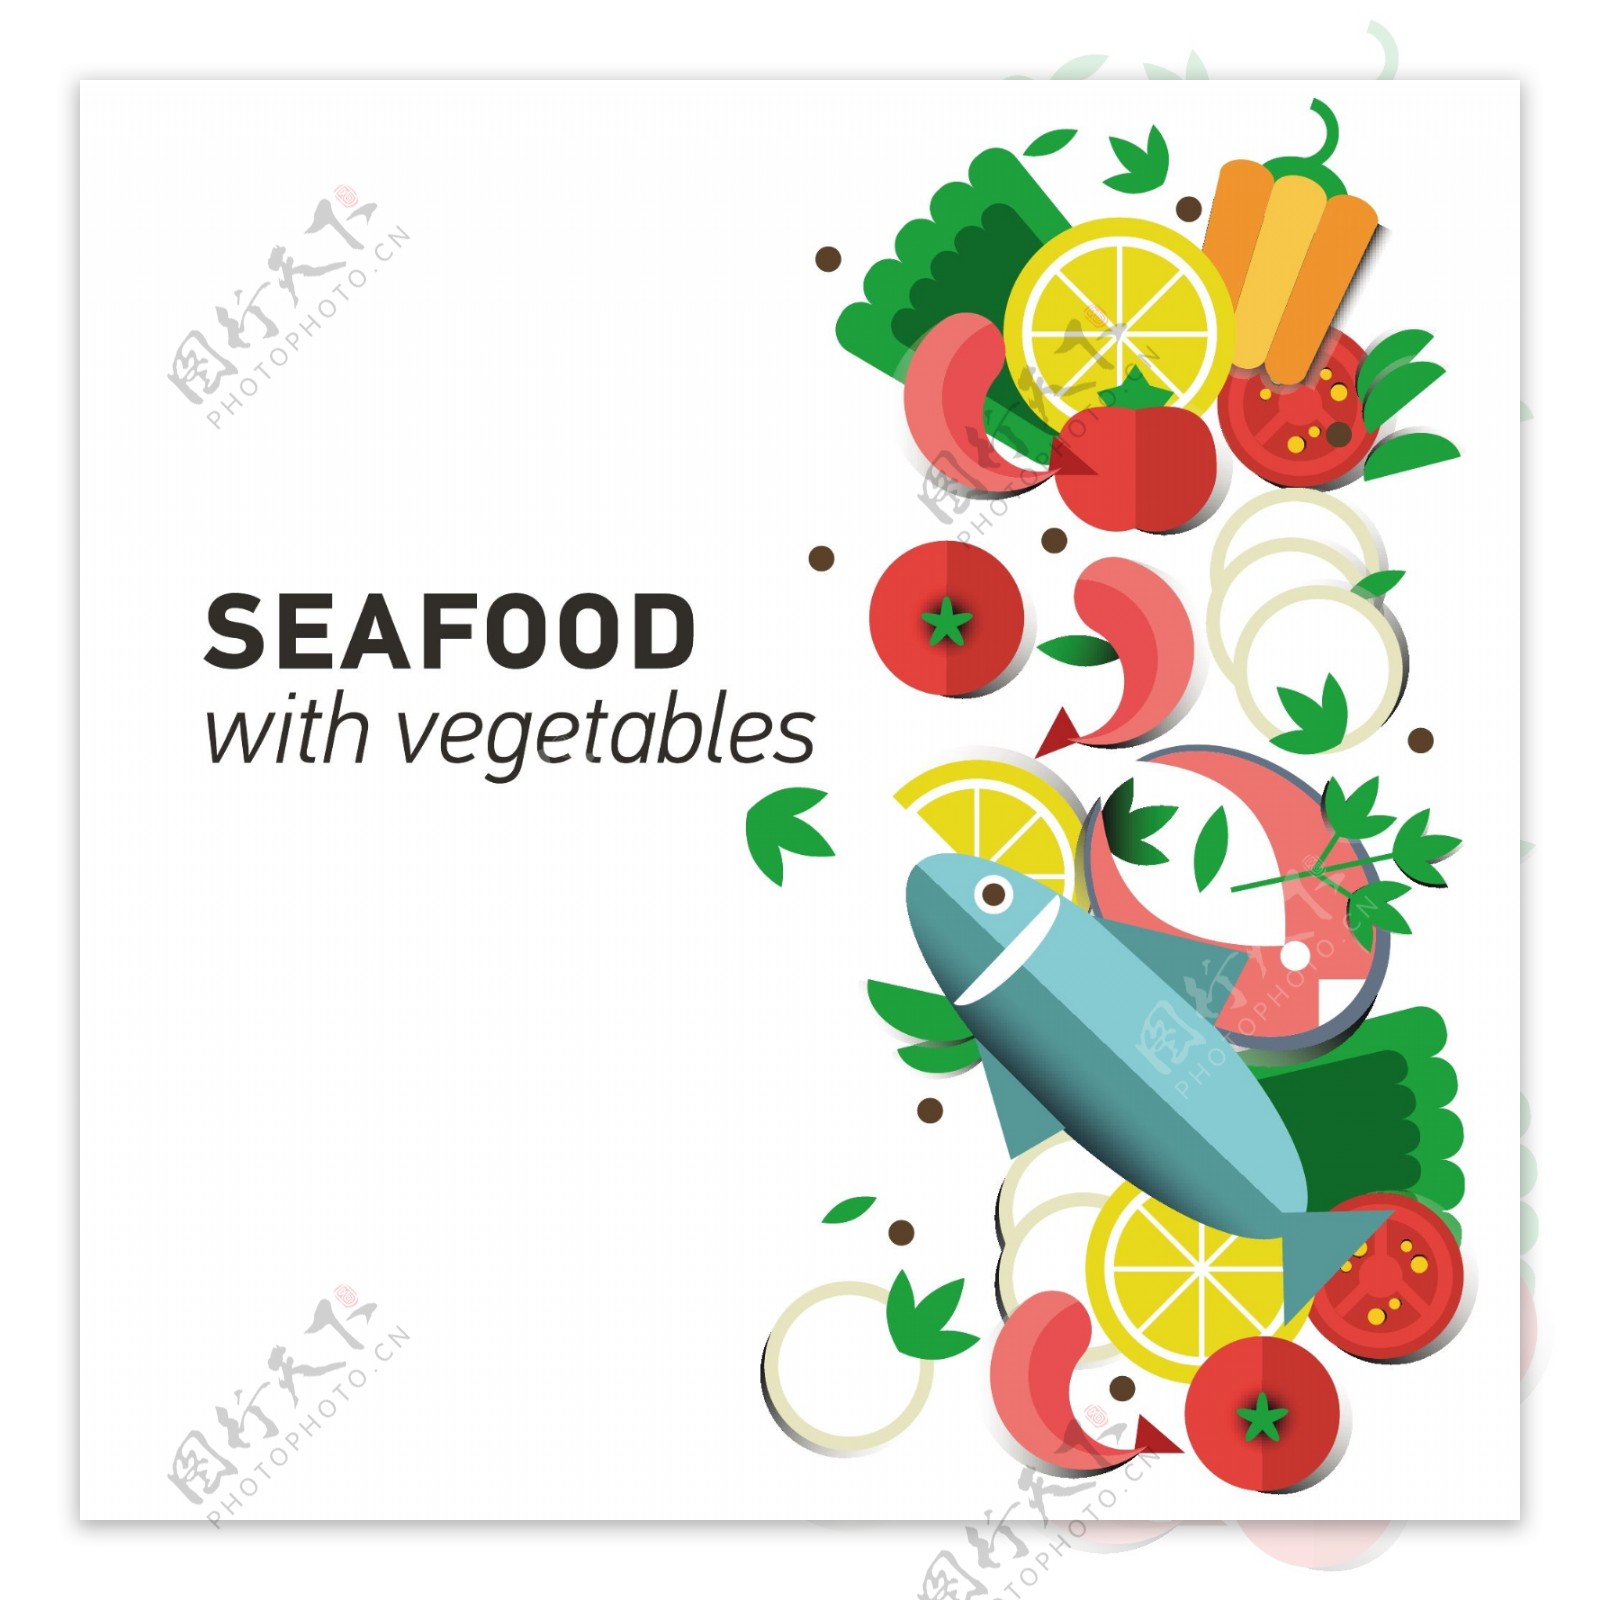 海鲜与蔬菜图案矢量素材下载